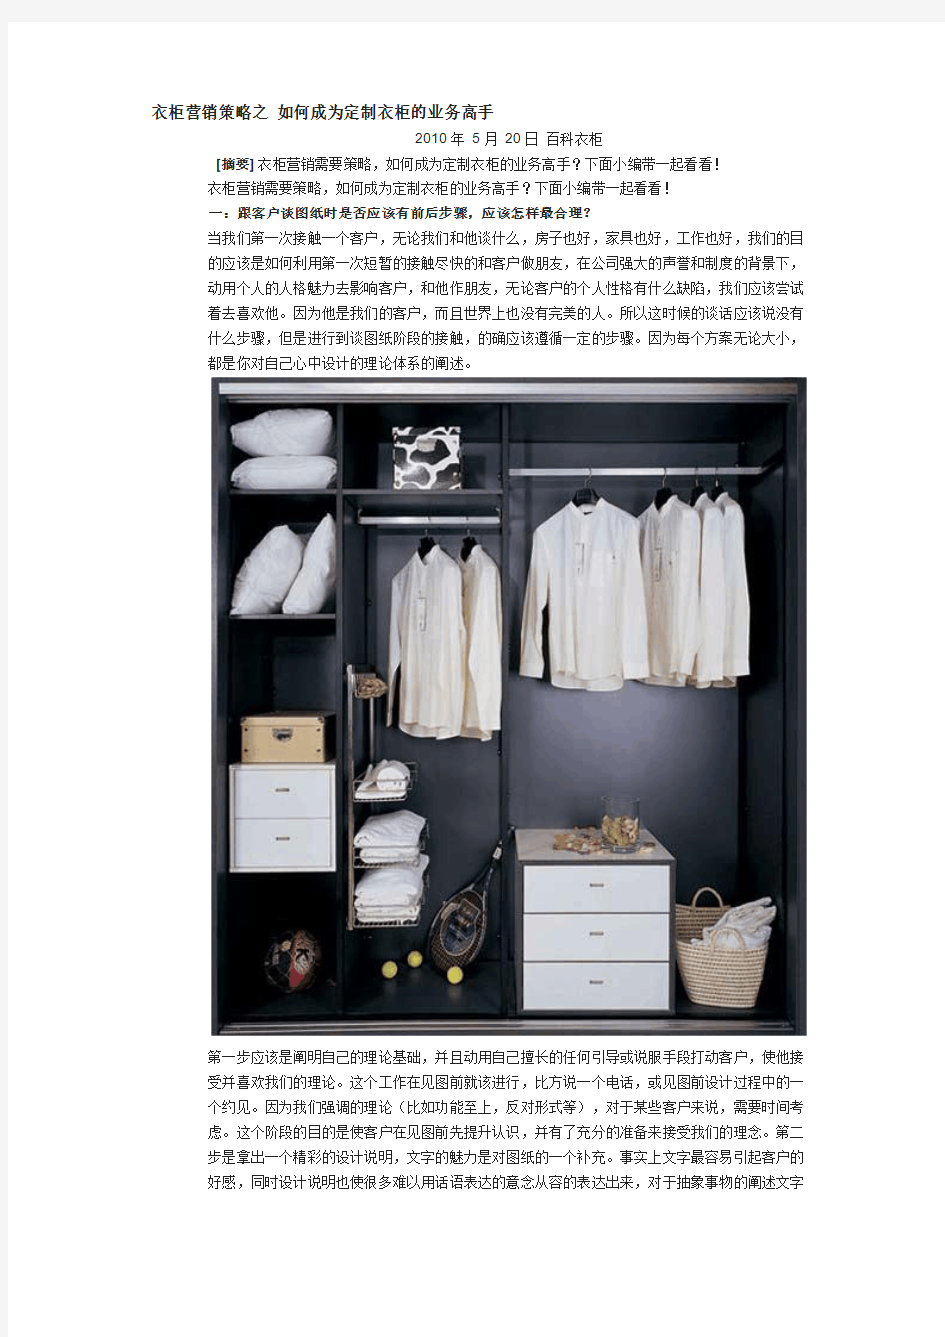 衣柜营销策略之 如何成为定制衣柜的业务高手